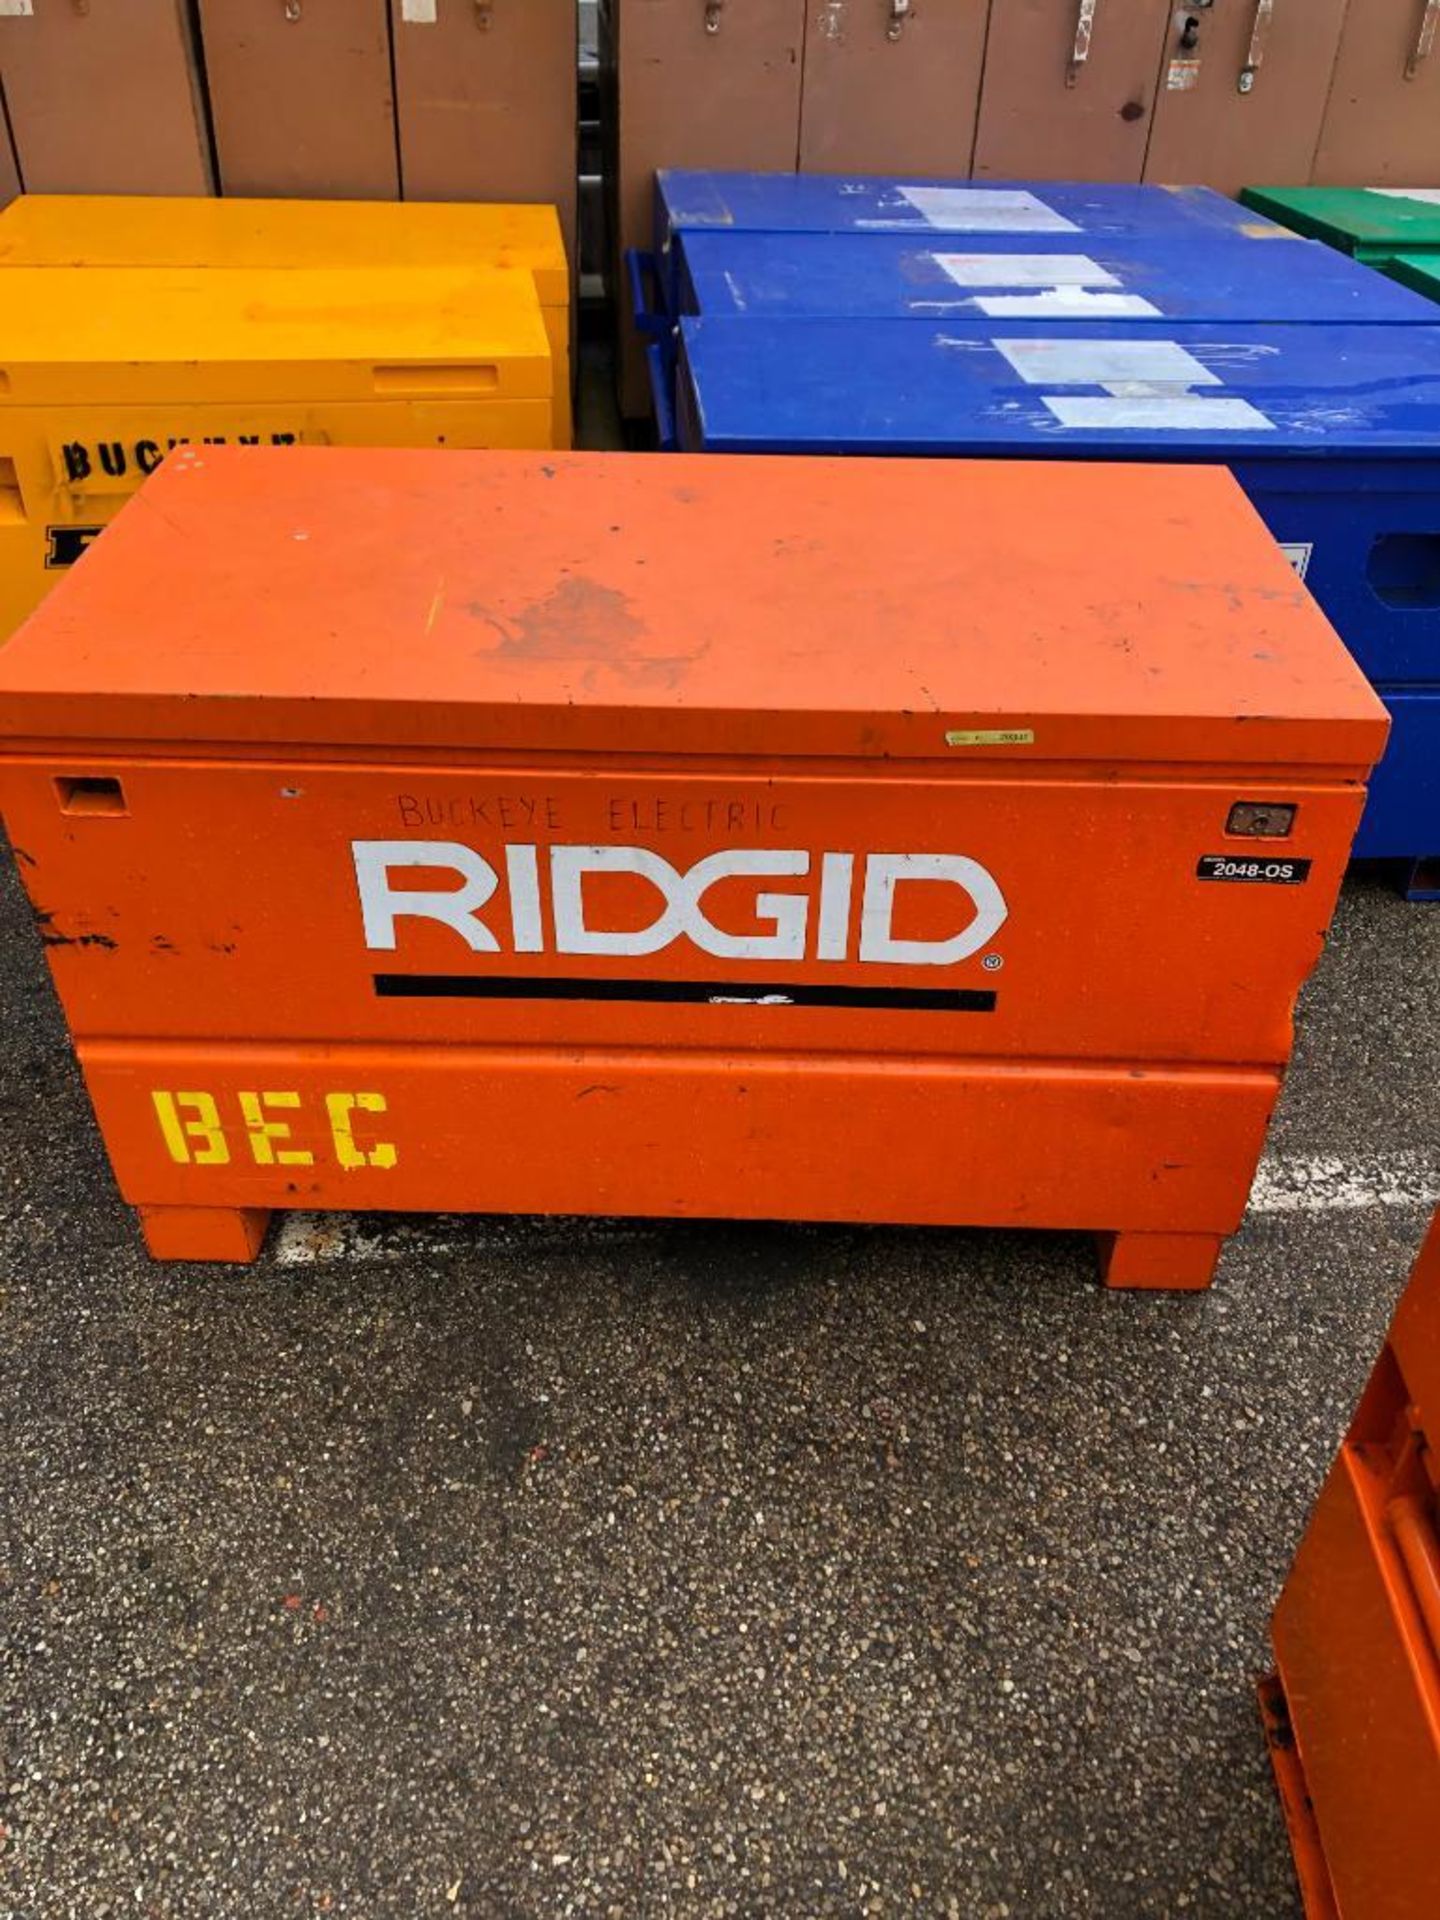 RIDGID JOB BOX, MODEL 2048OS - Image 2 of 3